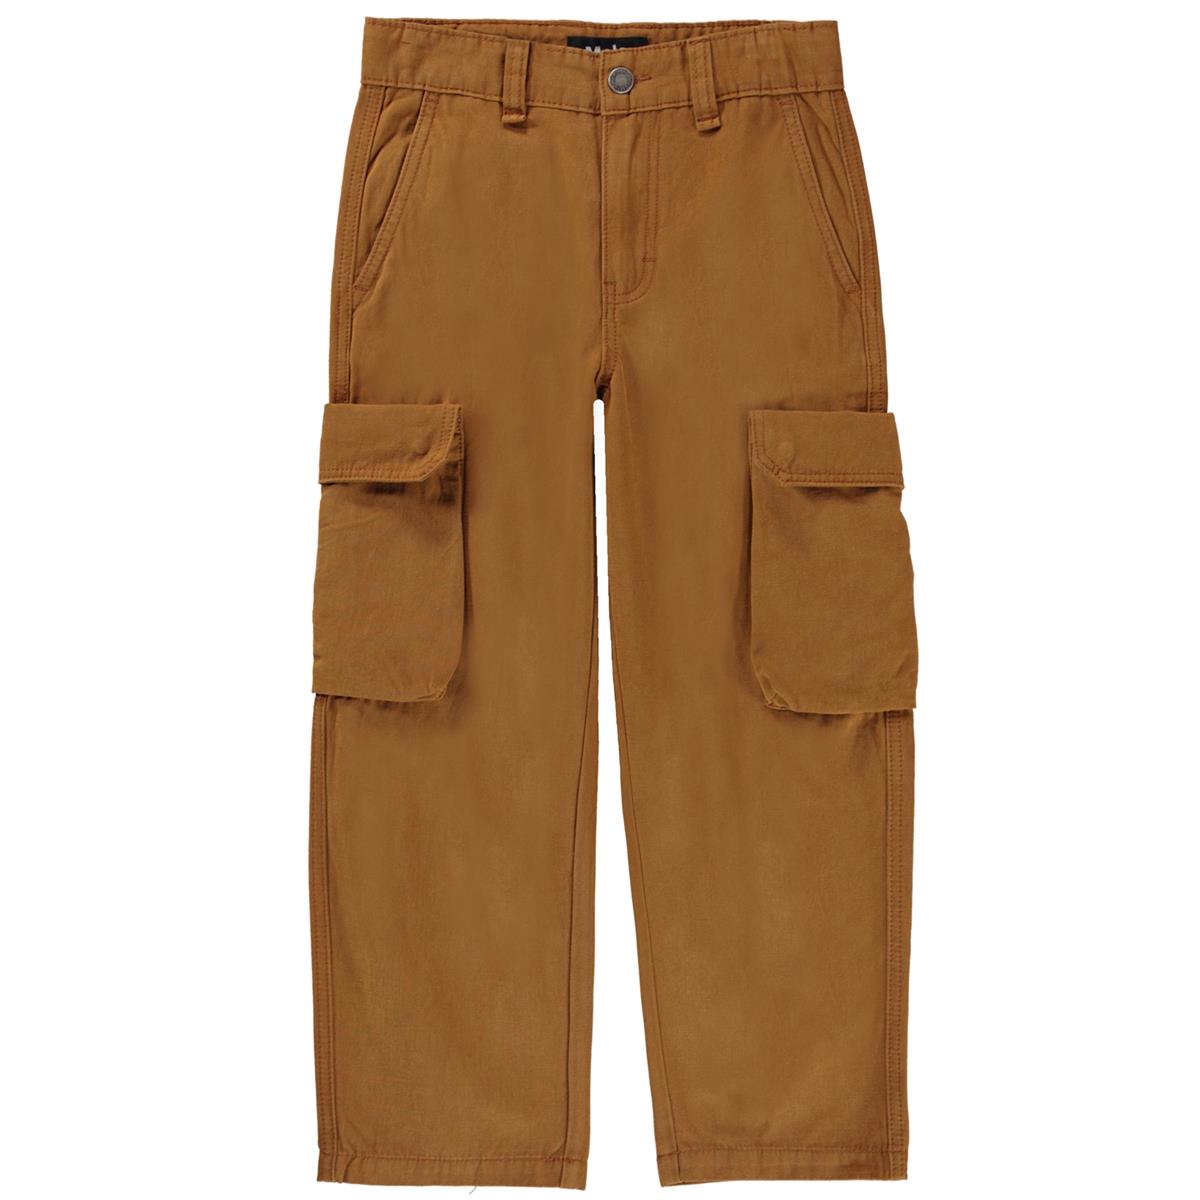 MOLO - AUSTIN Woven pants tawny brown